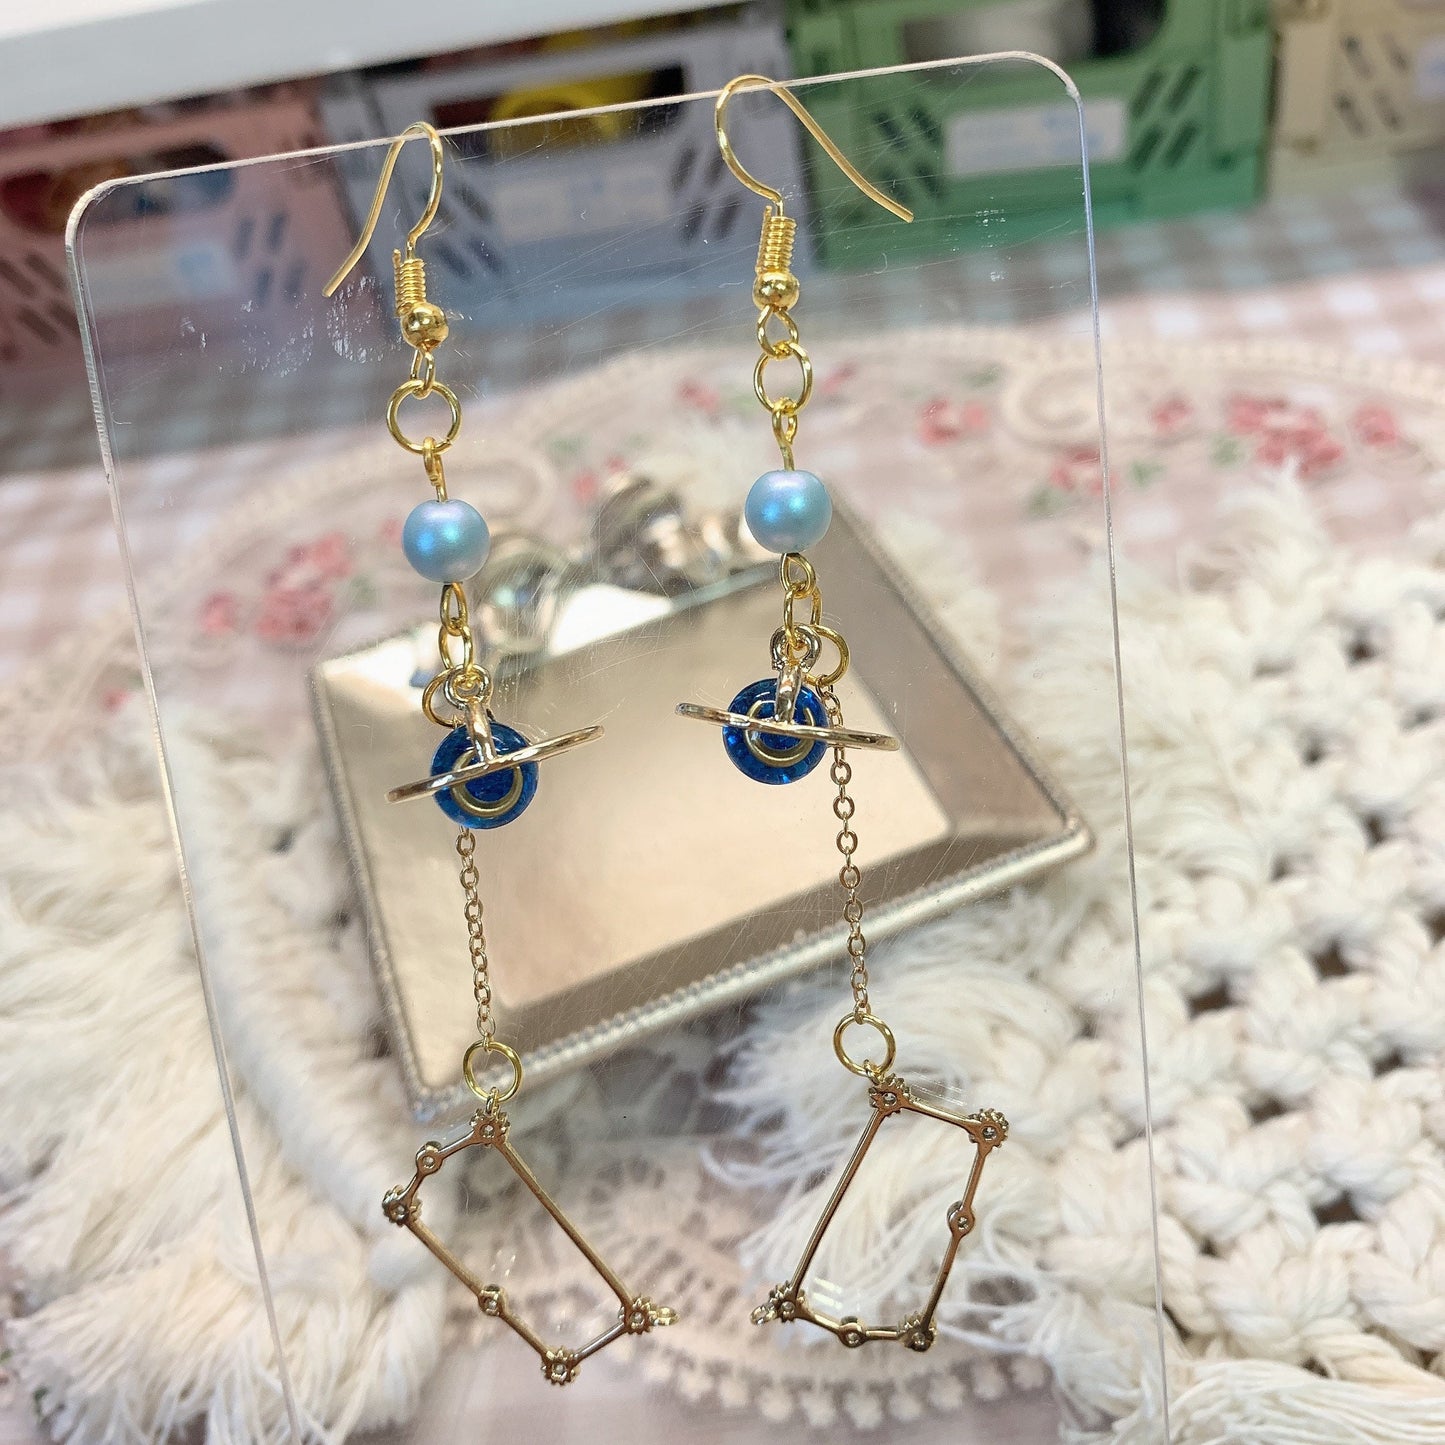 Moya handmade earrings「Stars dream」